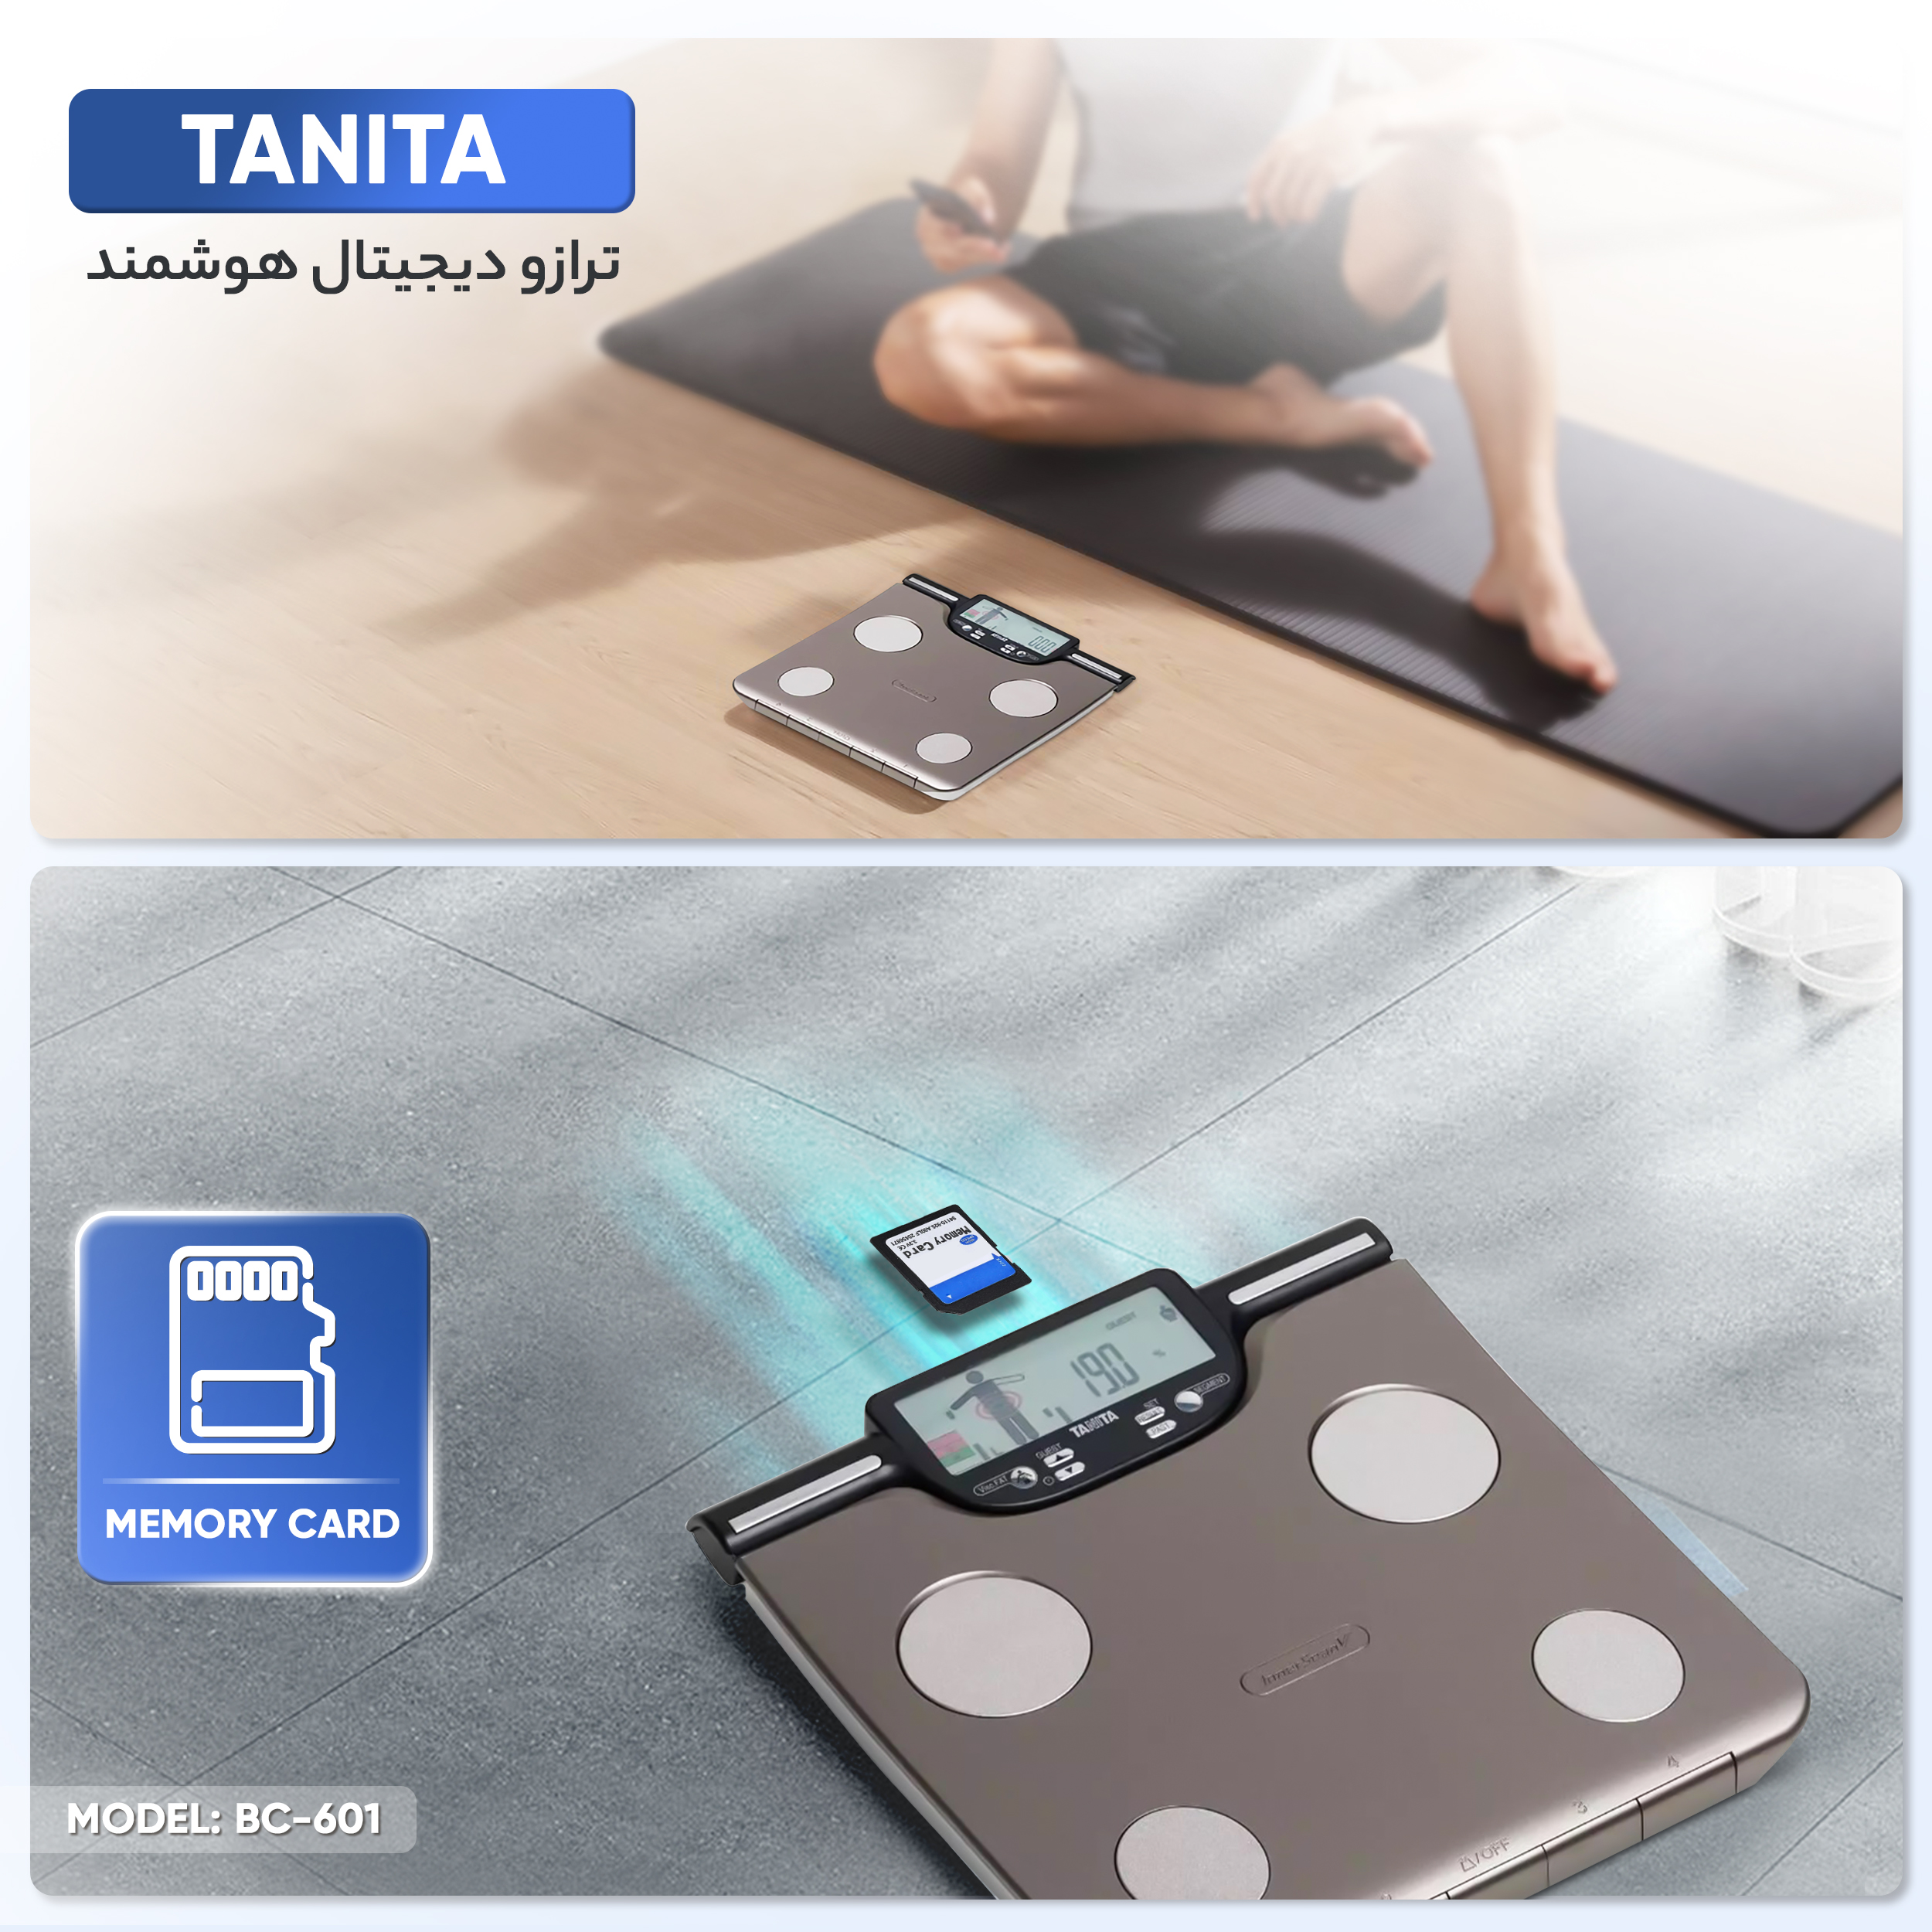 ترازو دیجیتال هوشمند تانیتا مدل BC-601